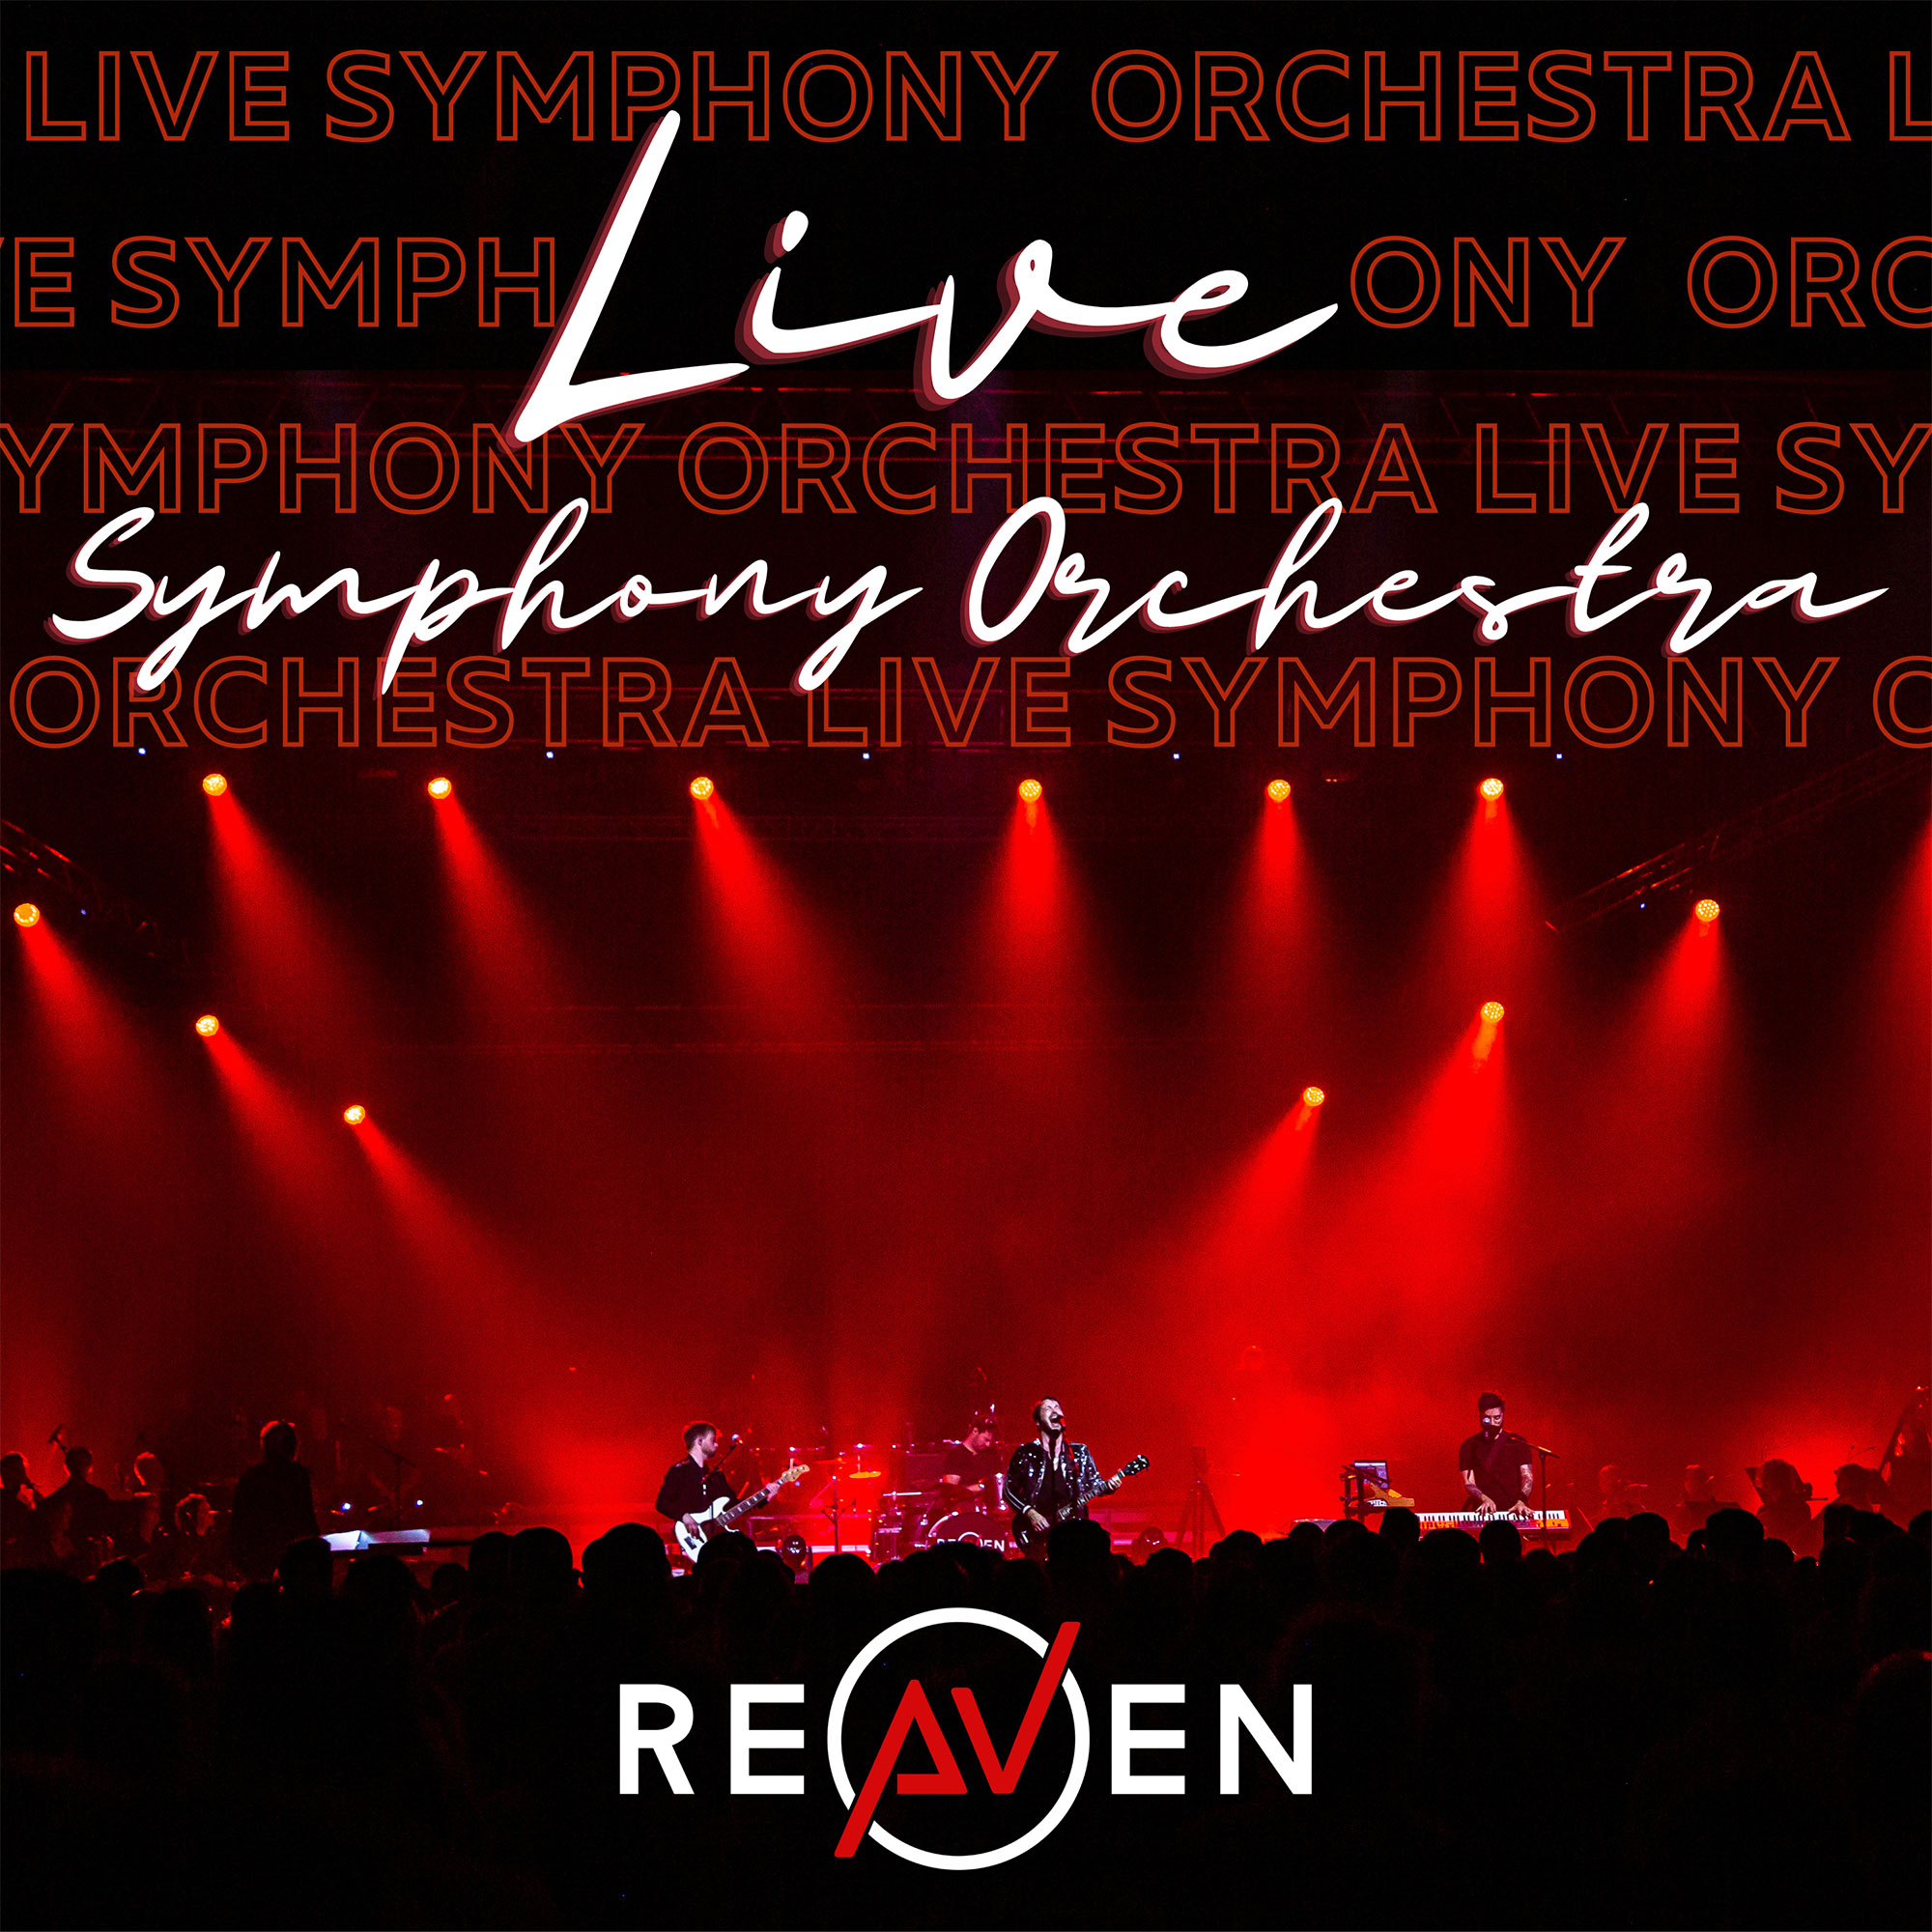  Reaven: Live Symphony Orchestra, un EP épico y vibrante